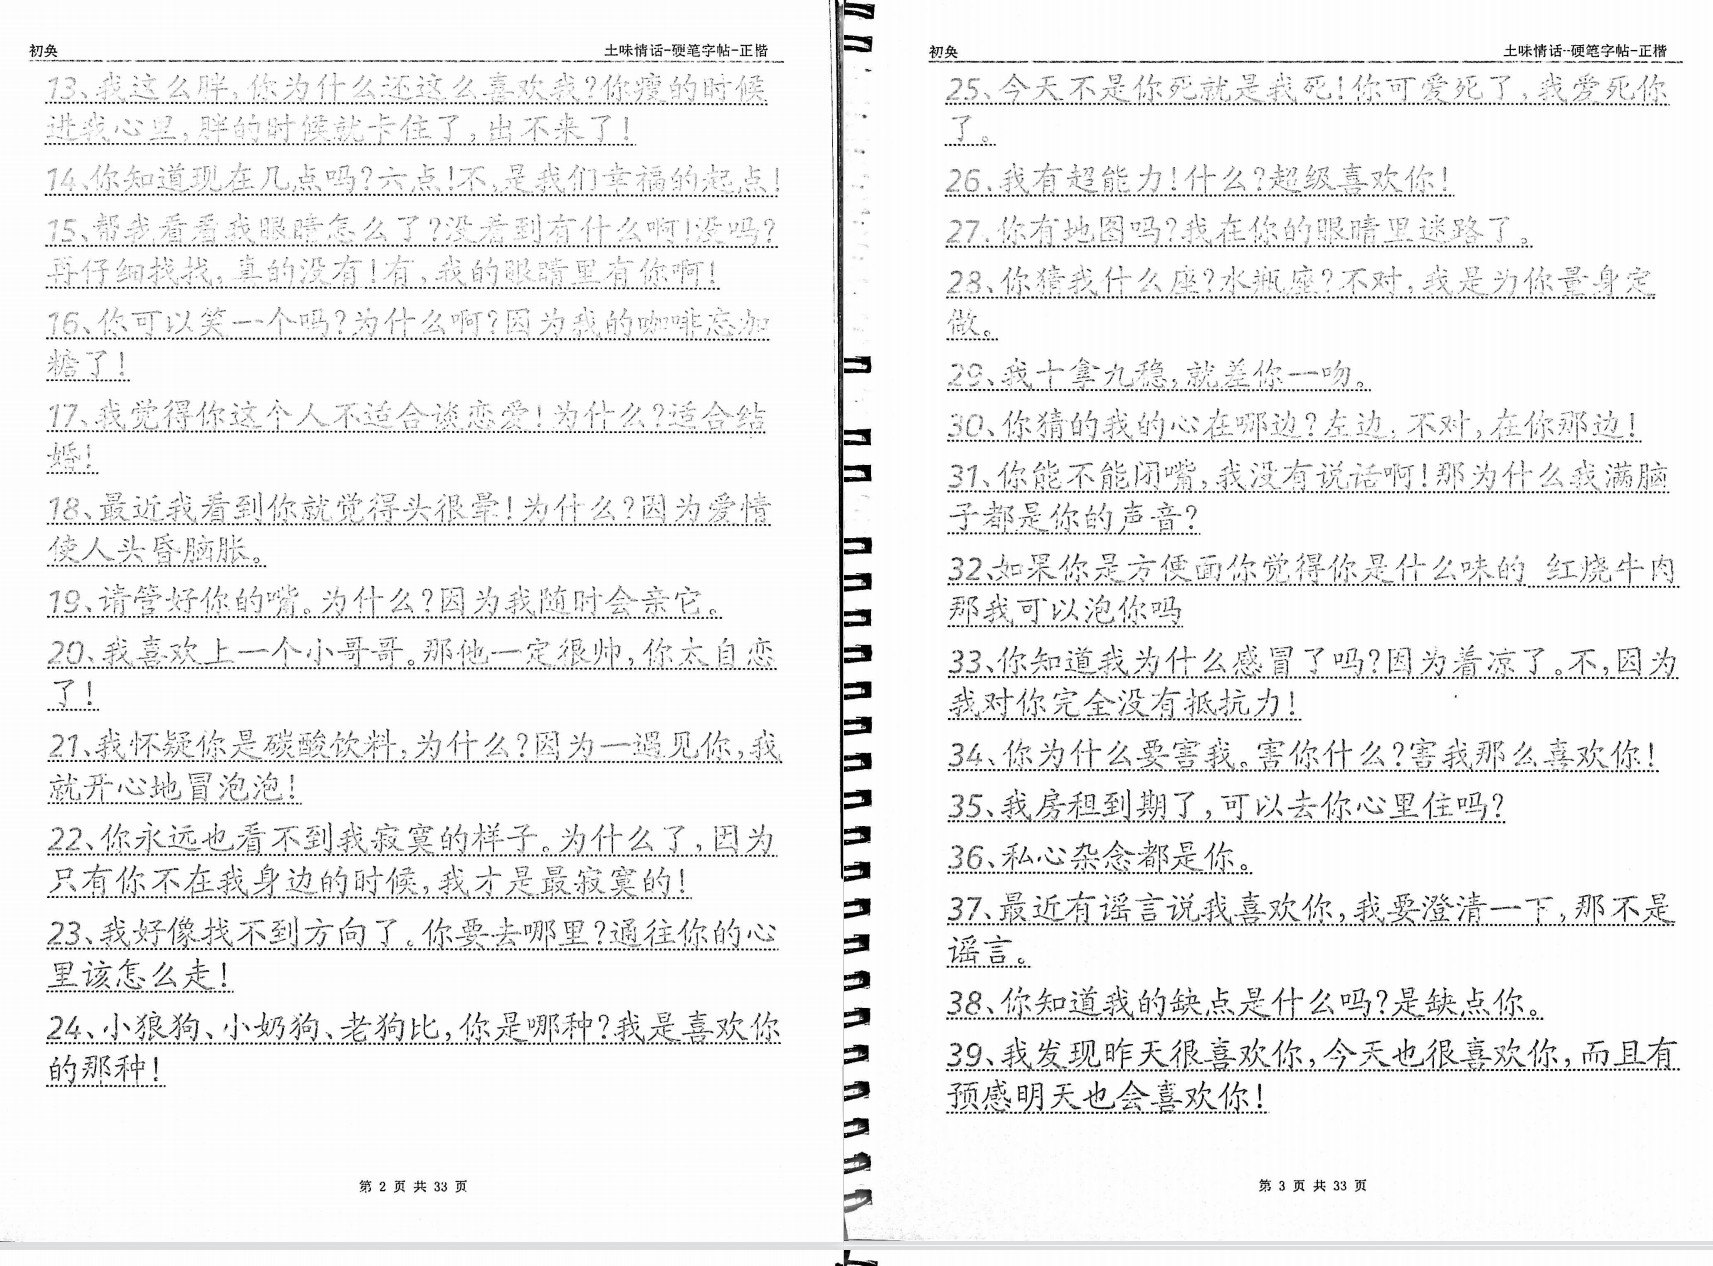 《土味情话》[无水印].pdf「百度网盘下载」PDF 电子书插图1